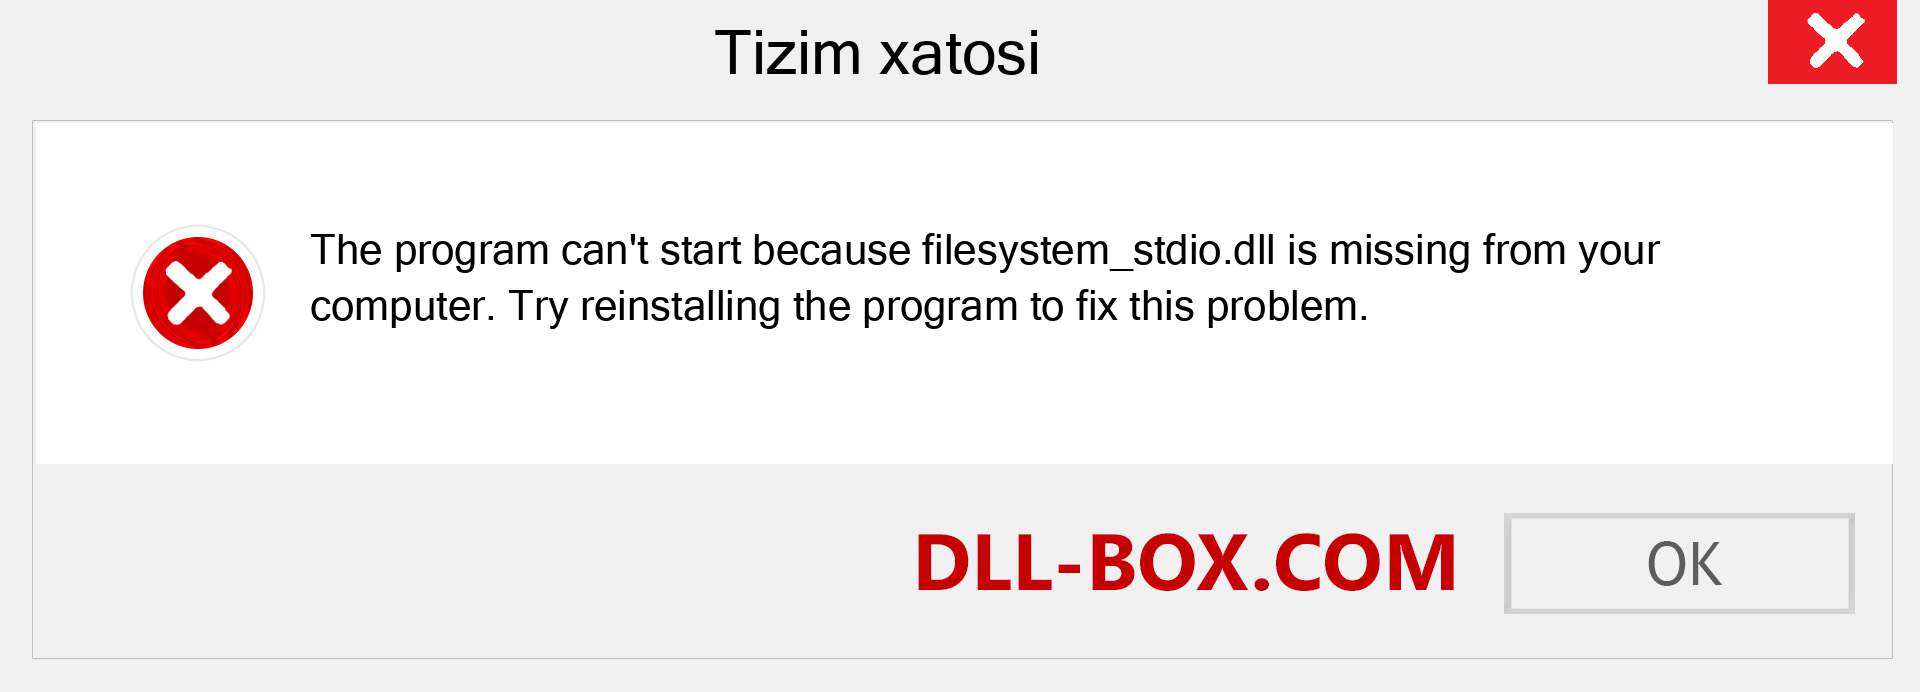 filesystem_stdio.dll fayli yo'qolganmi?. Windows 7, 8, 10 uchun yuklab olish - Windowsda filesystem_stdio dll etishmayotgan xatoni tuzating, rasmlar, rasmlar